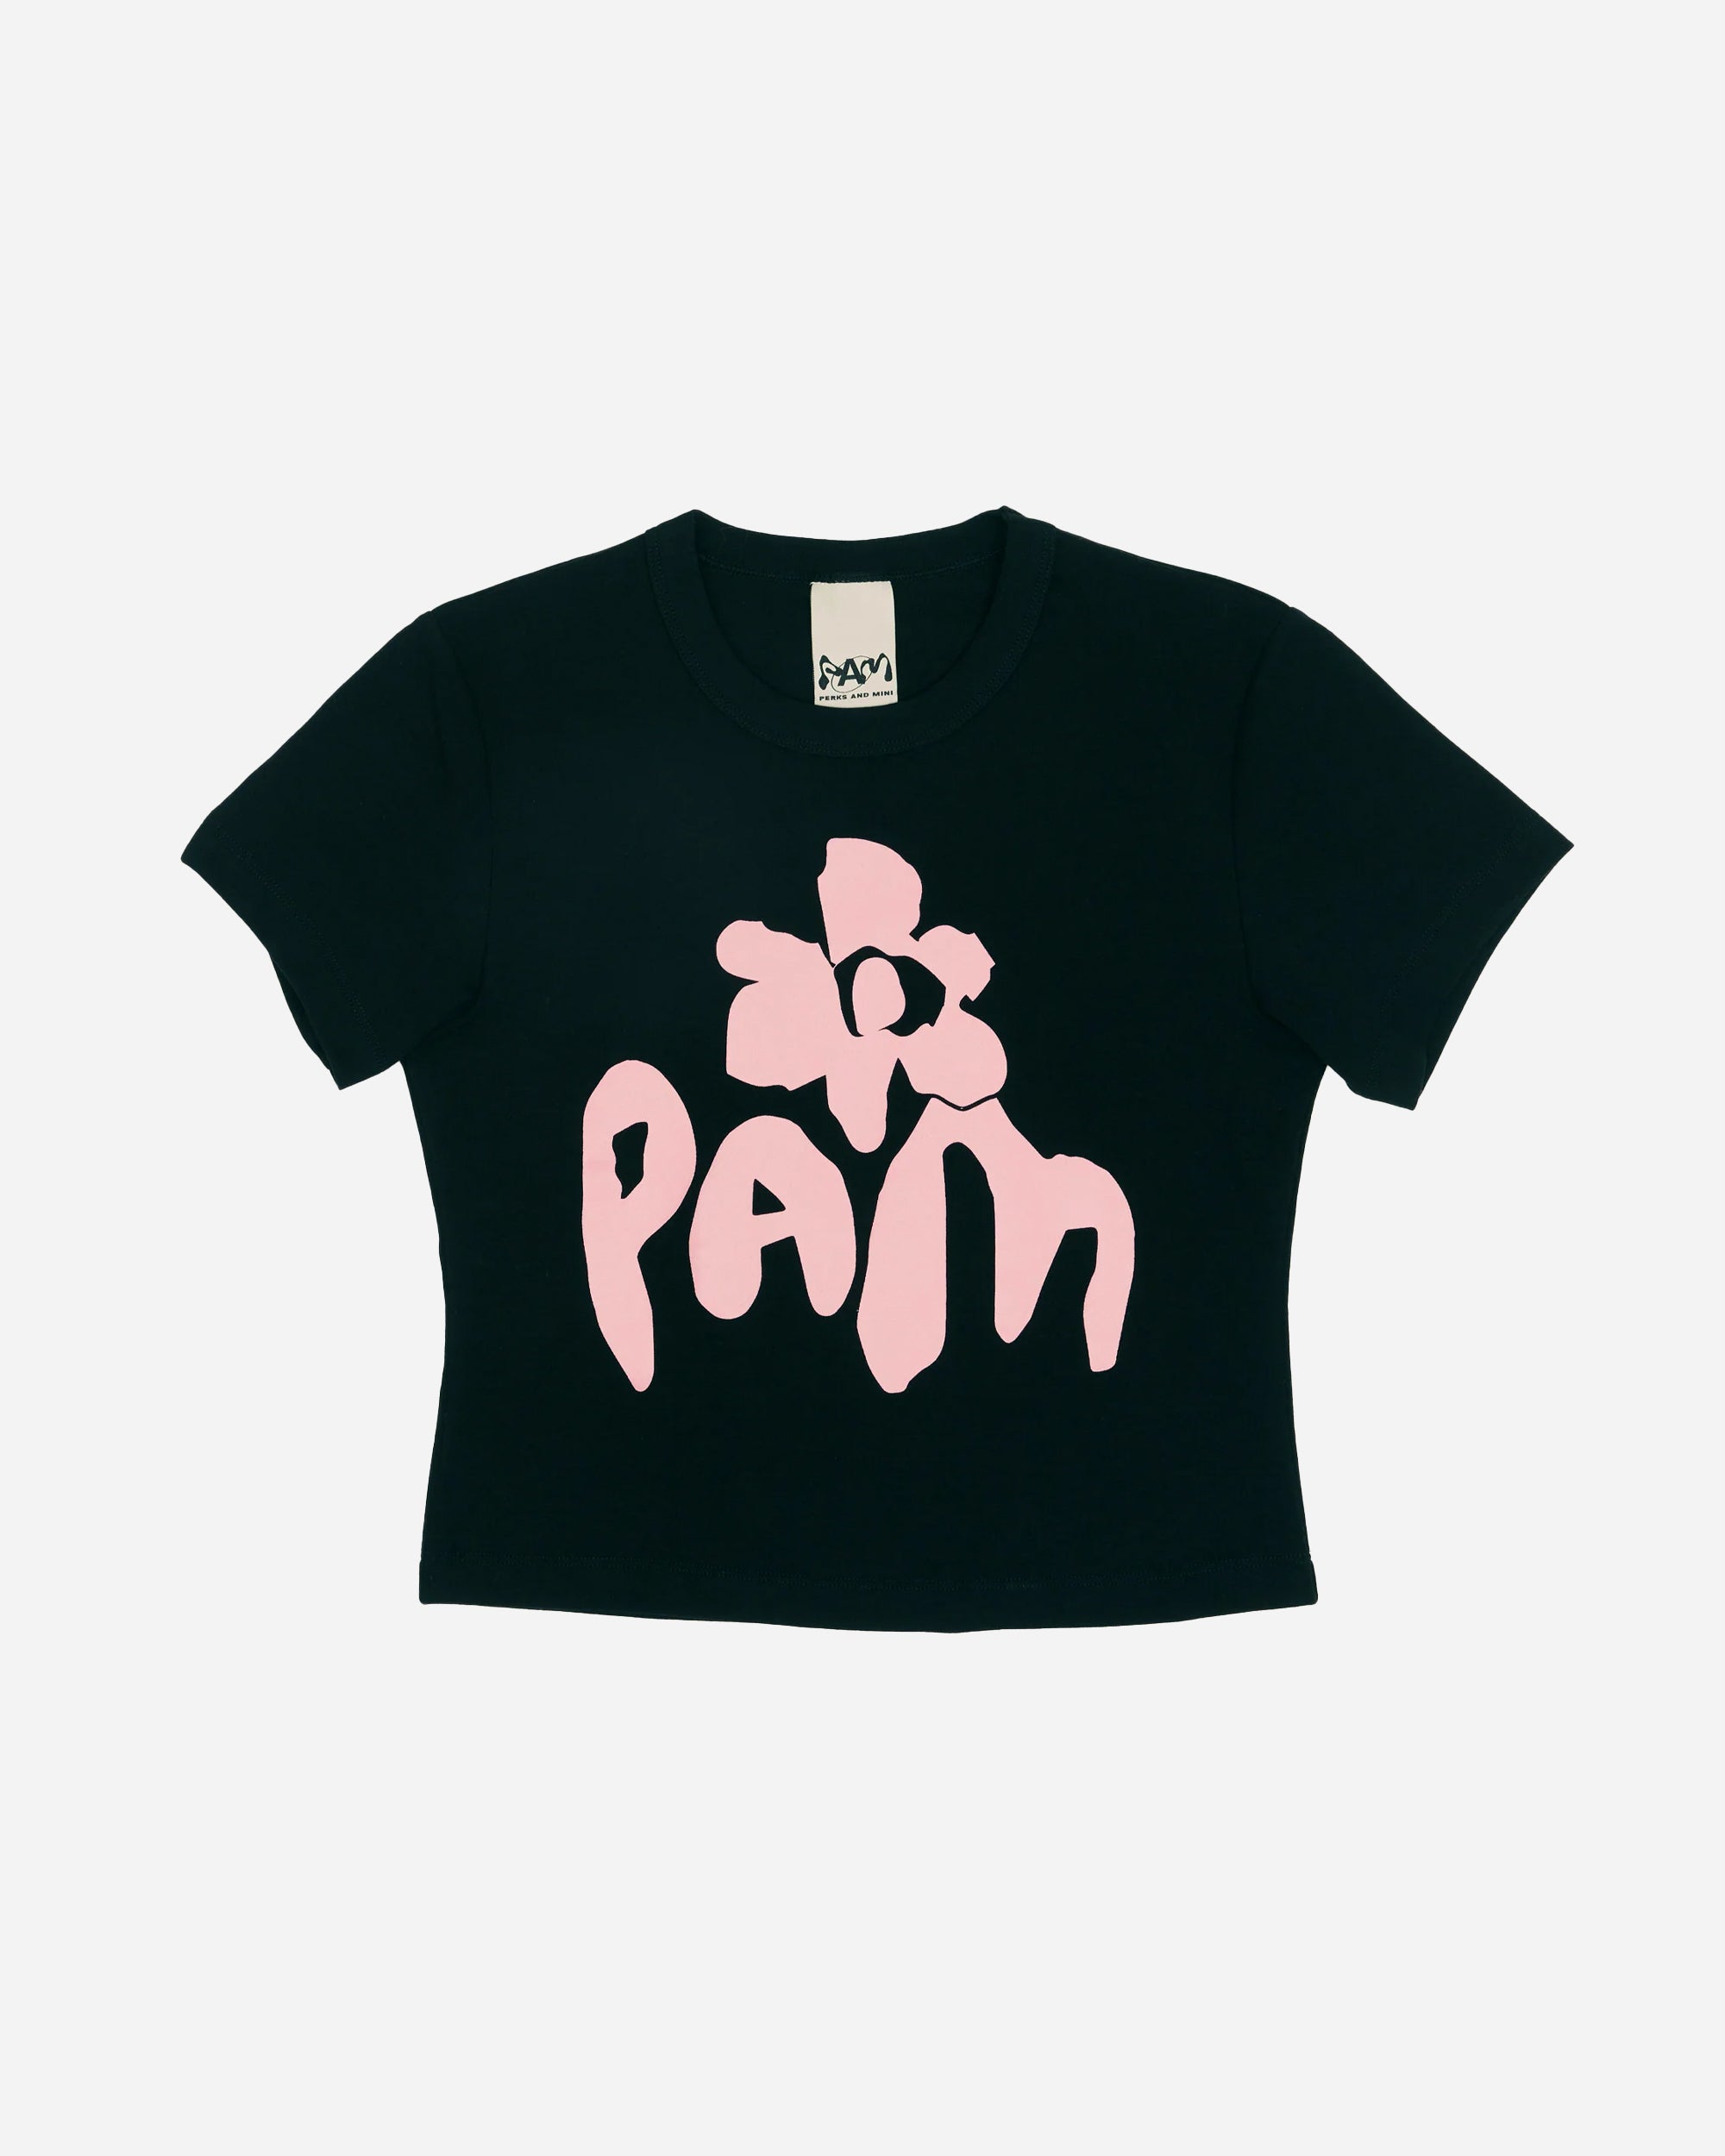 P.A.M 3 is a magic number Baby T-shirt BLACK 4562/B-B